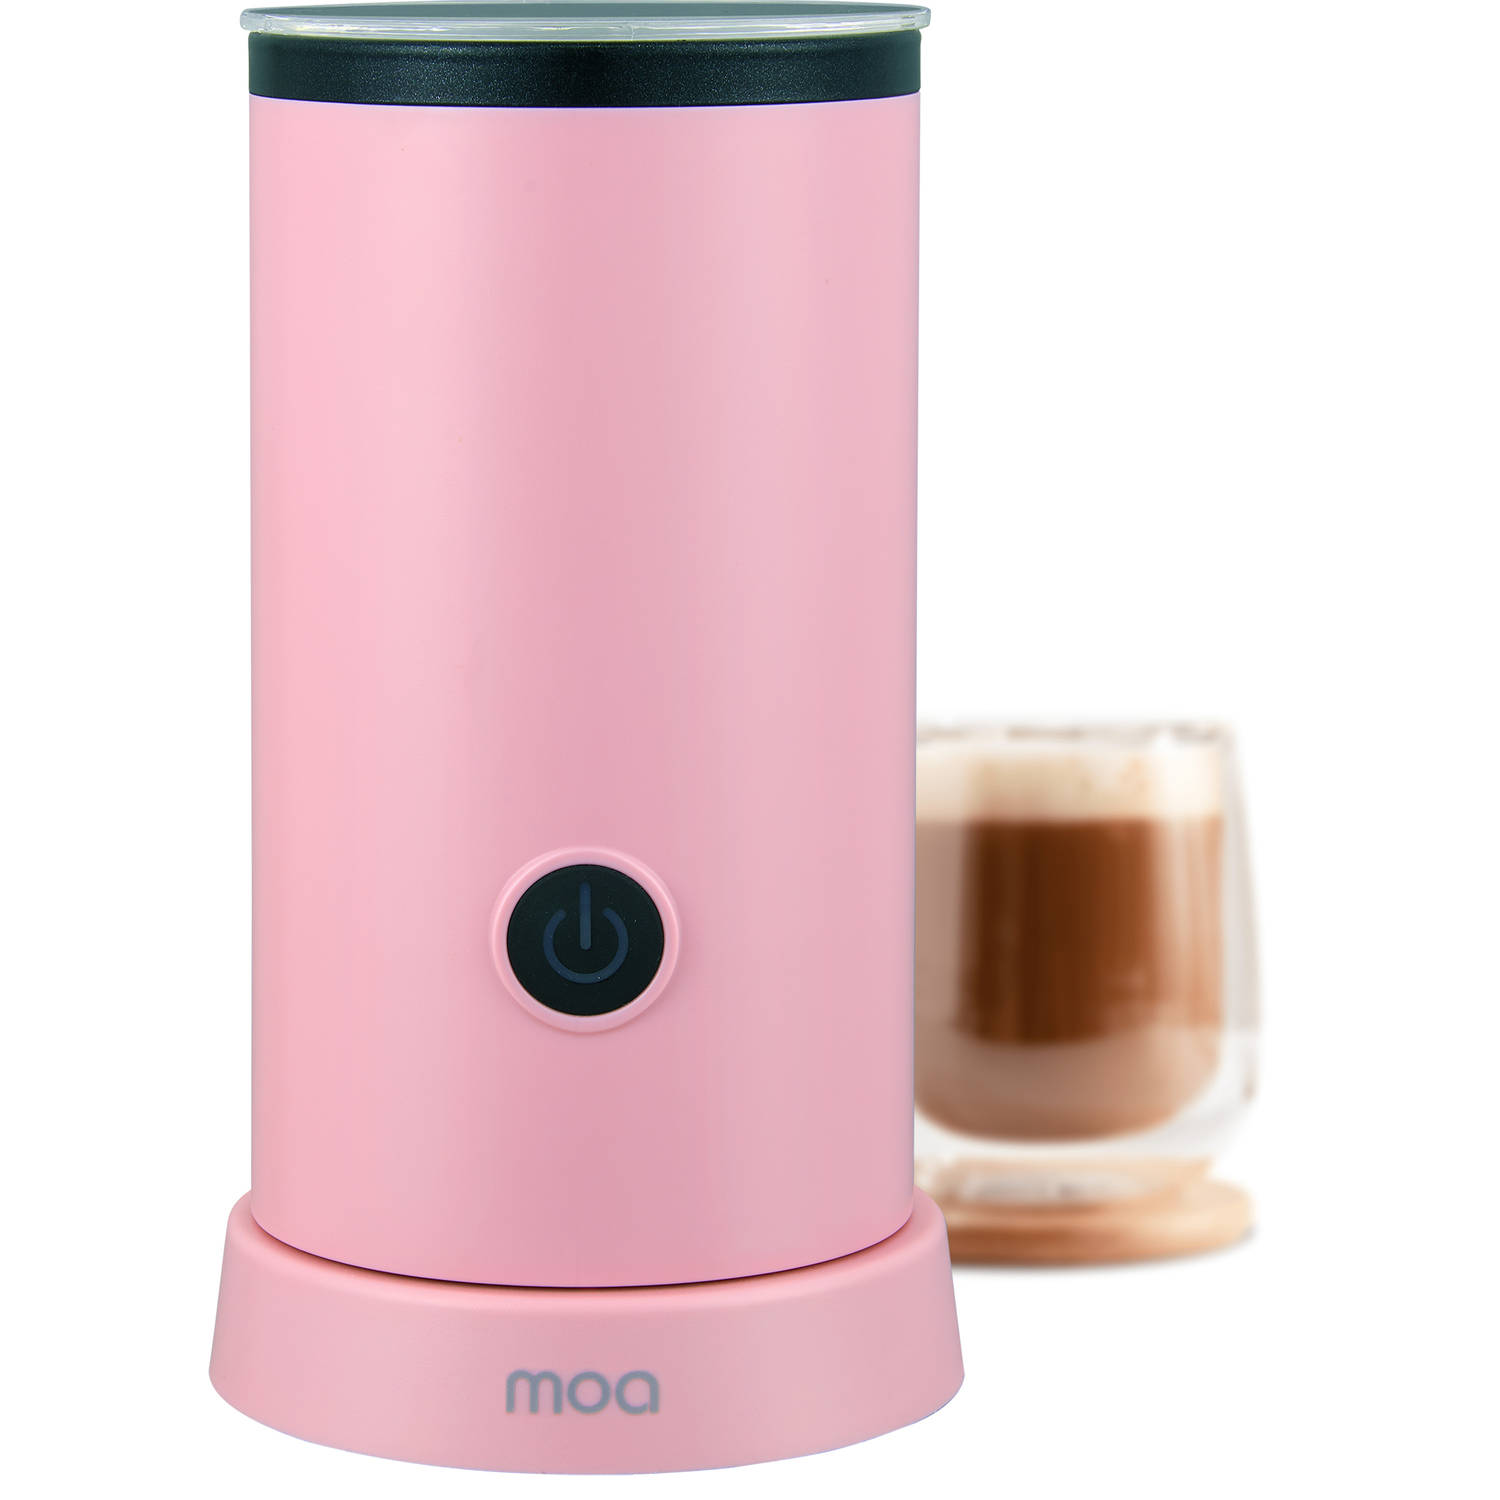 MOA Melkopschuimer Elektrisch BPA vrij Voor Opschuimen en Verwarmen Roze MF5P